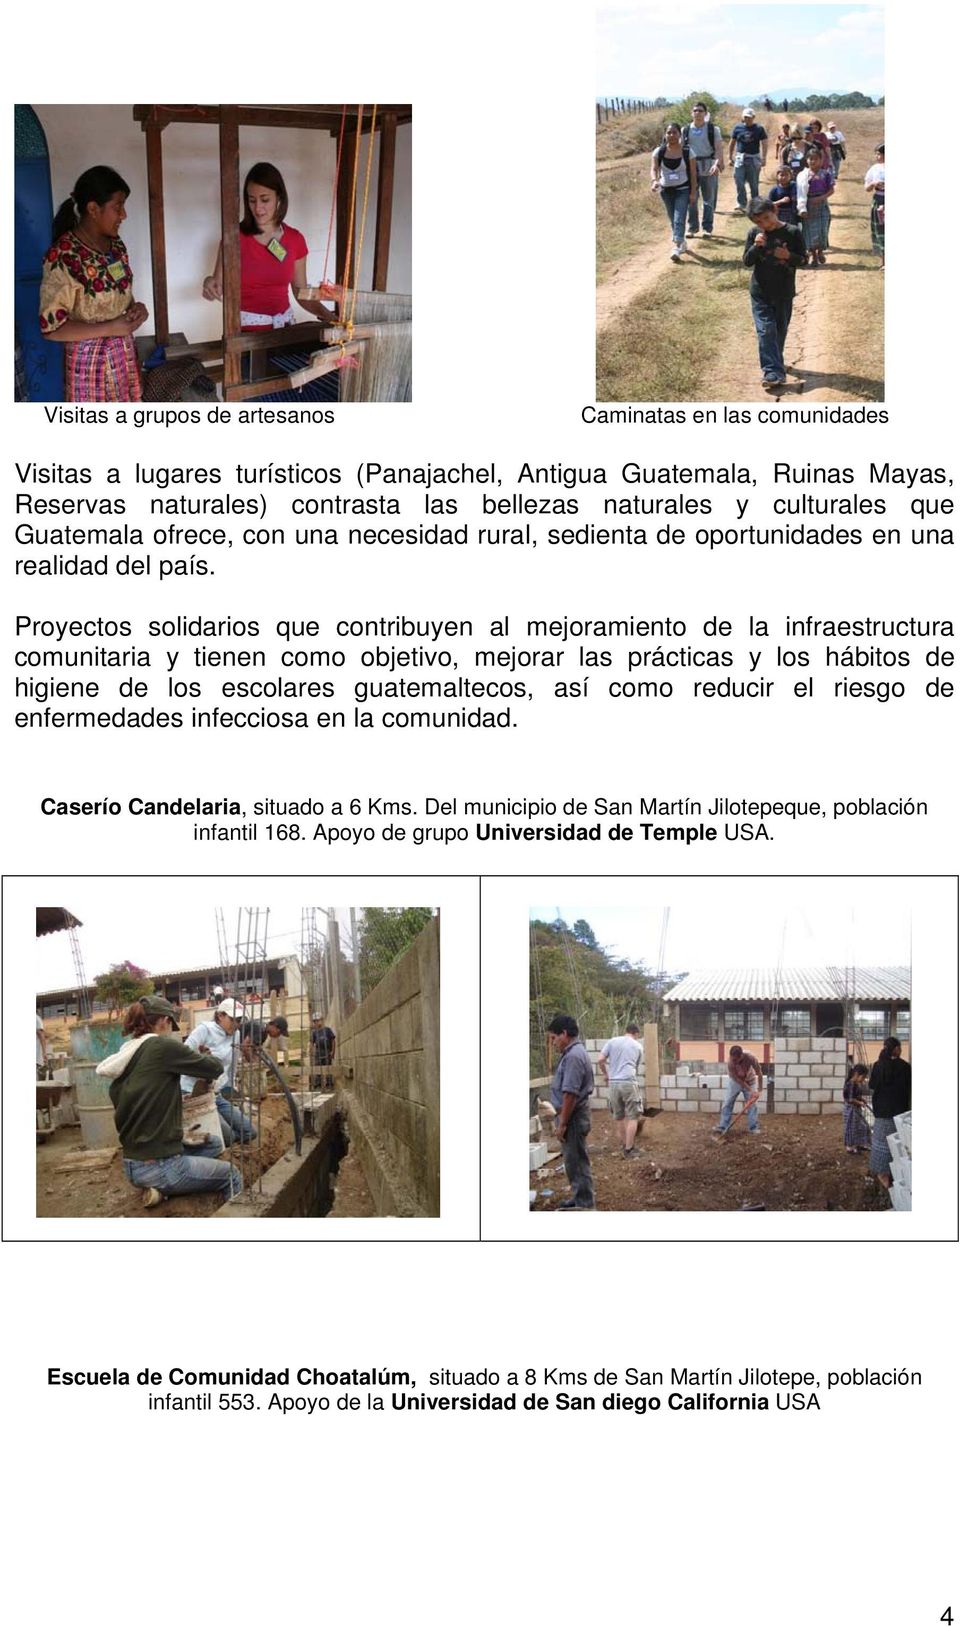 Proyectos solidarios que contribuyen al mejoramiento de la infraestructura comunitaria y tienen como objetivo, mejorar las prácticas y los hábitos de higiene de los escolares guatemaltecos, así como